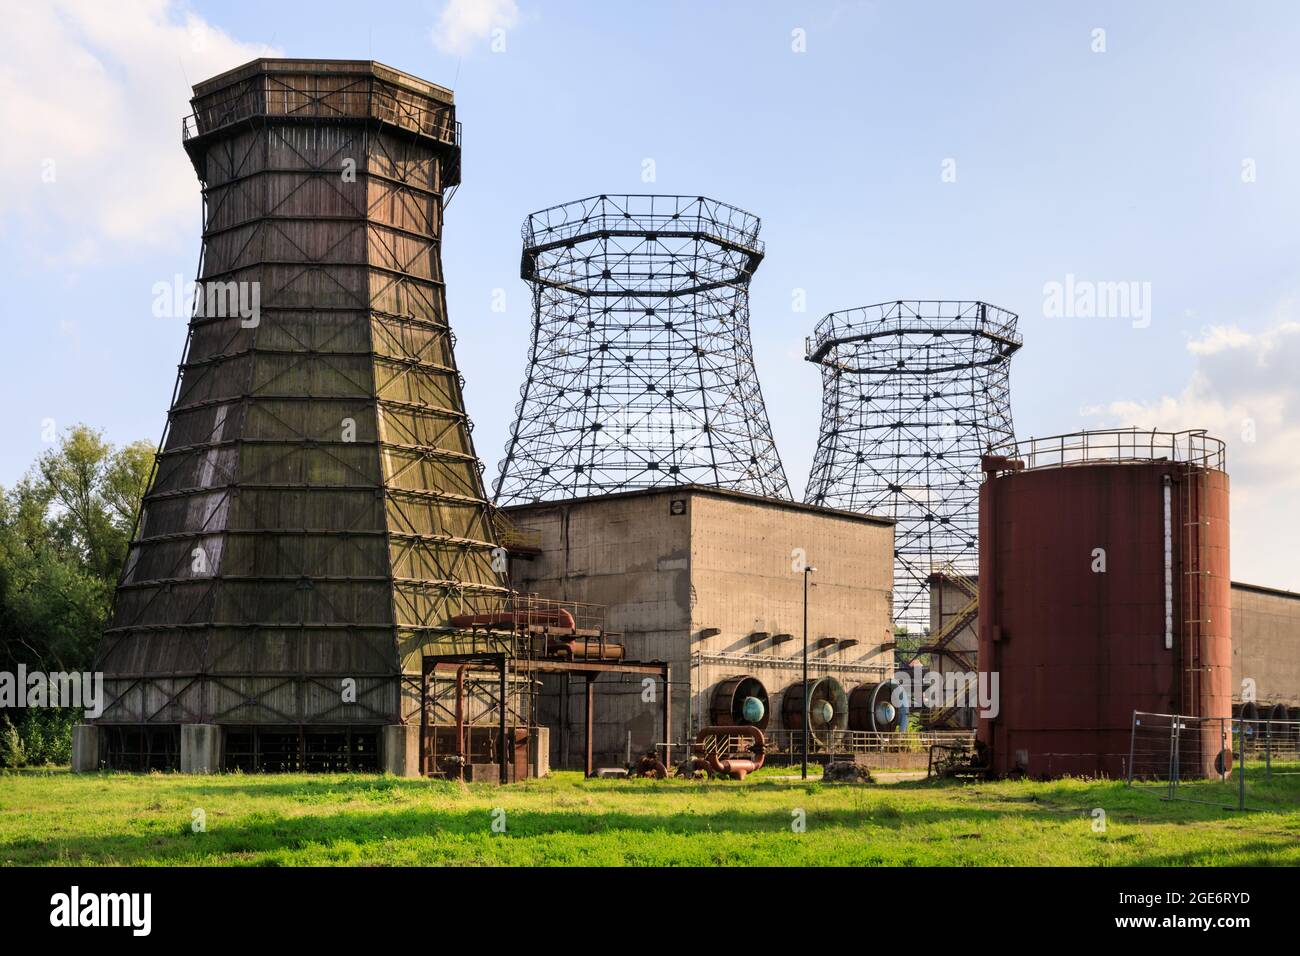 Détenteurs de gaz, usine de cokerie du complexe industriel de la mine de charbon Zeche Zollverein, site classé au patrimoine mondial de l'UNESCO, région de Ruhr, Essen, Allemagne Banque D'Images